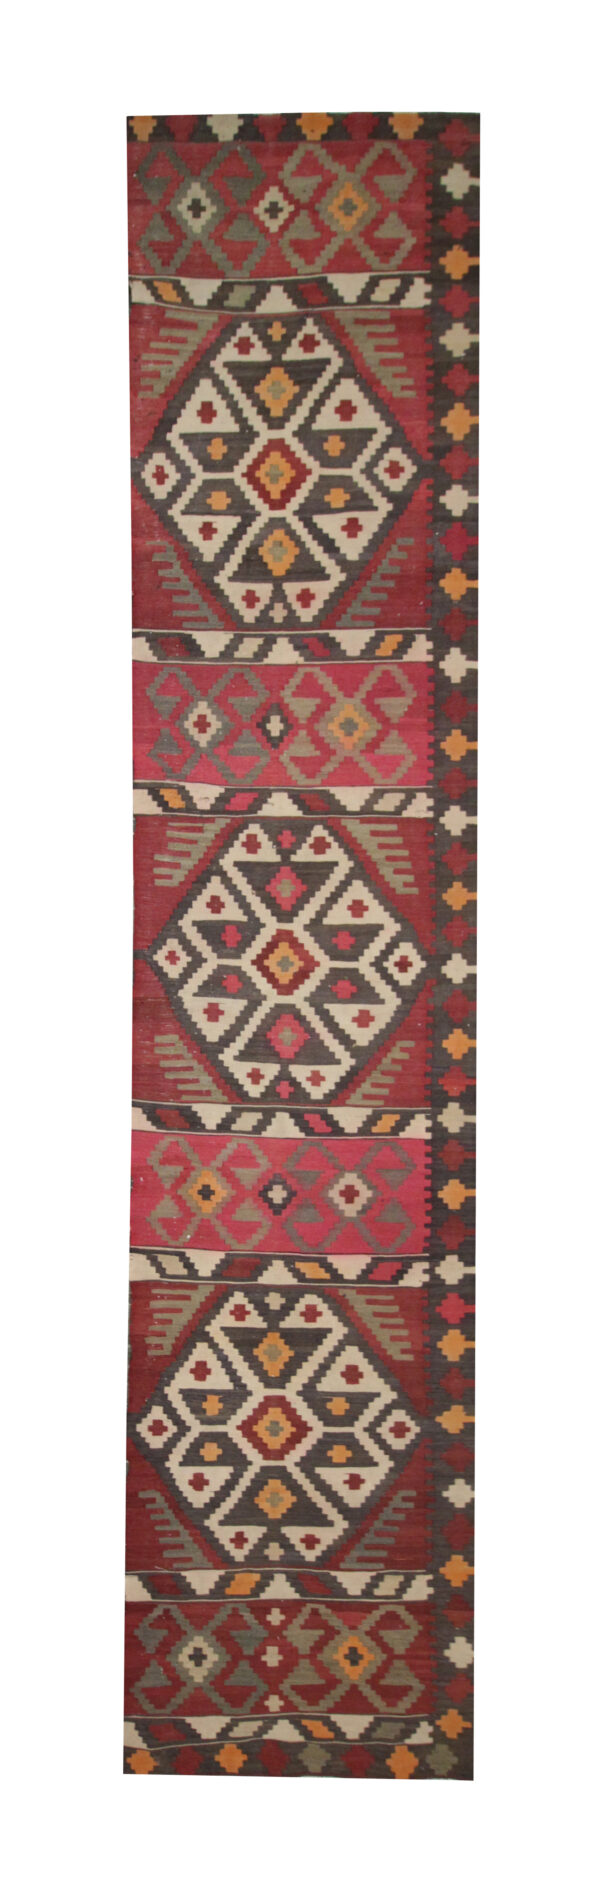 Red Persian Rug Handmade Kilim Rugs for Sale UK, Vintage Persian Carpet